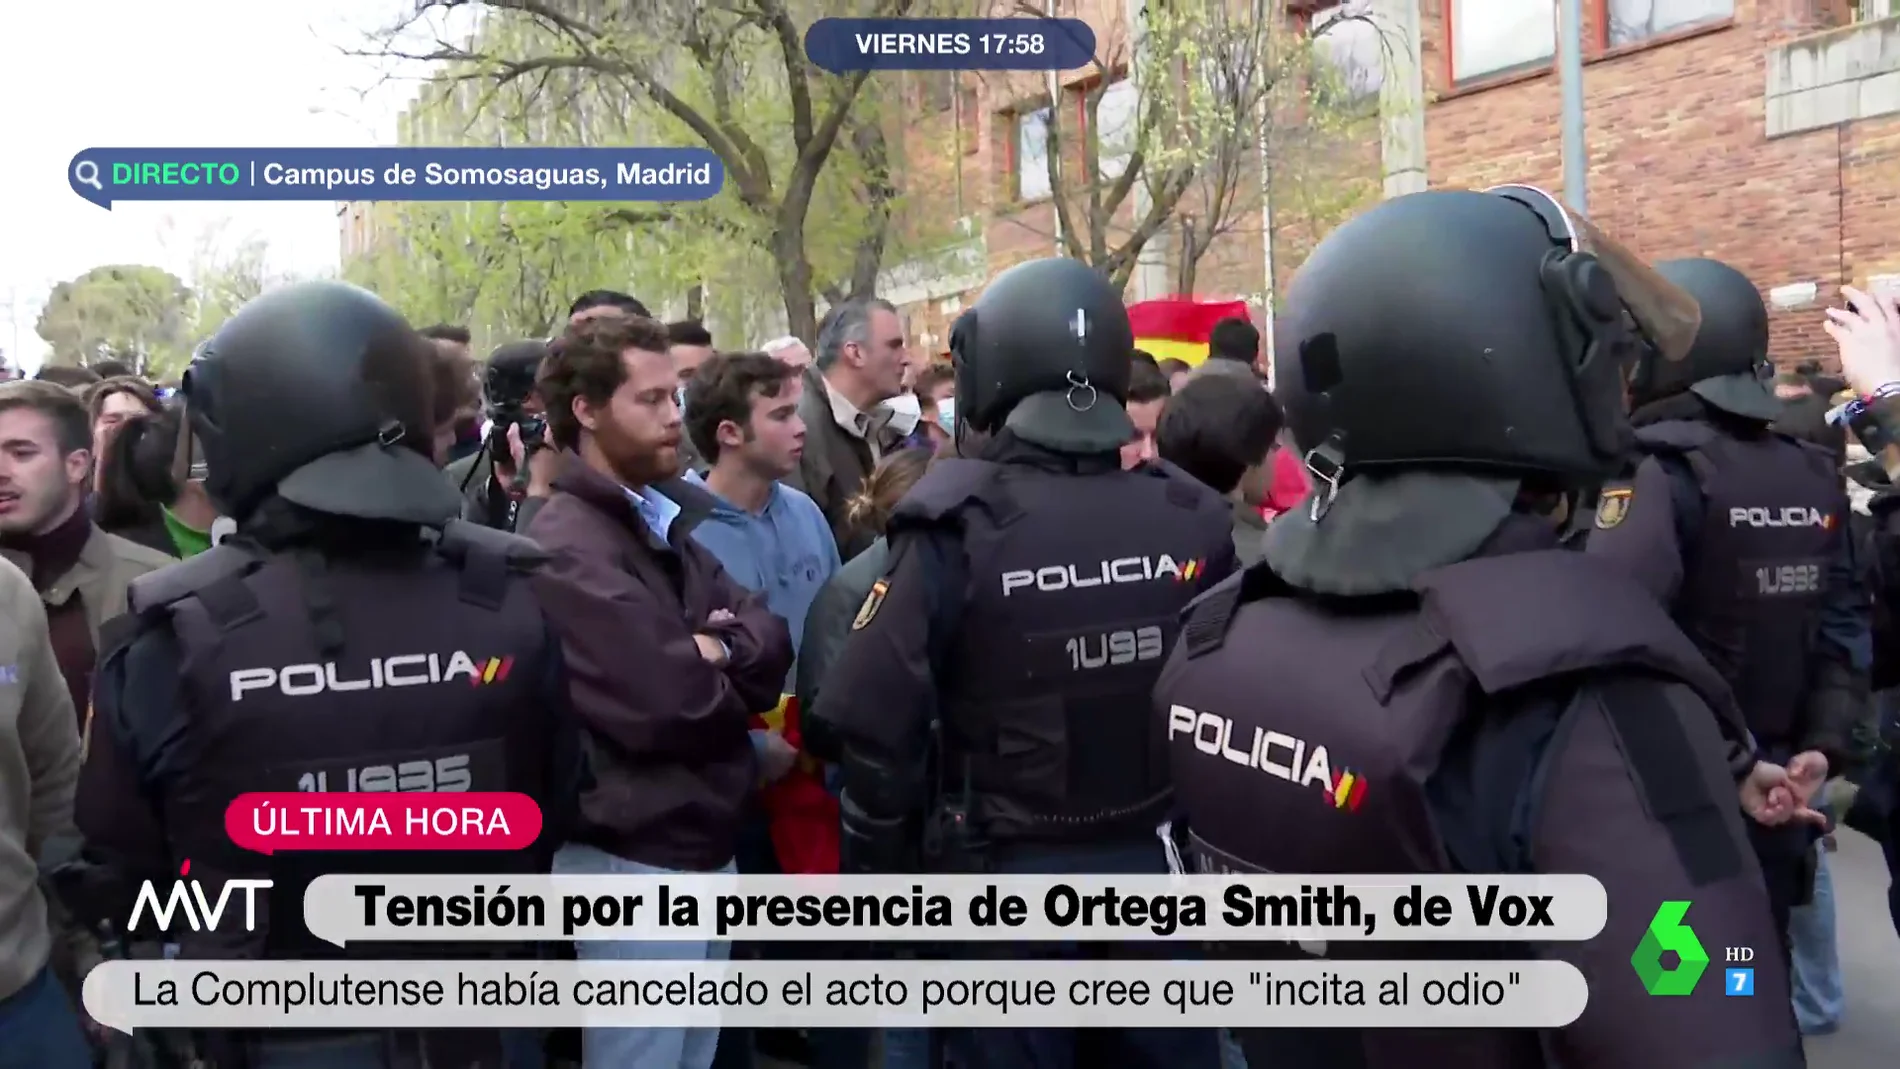 Tensión por la presencia de Ortega Smith en la Universidad Complutense tras la cancelación de un acto por "incitar al odio"